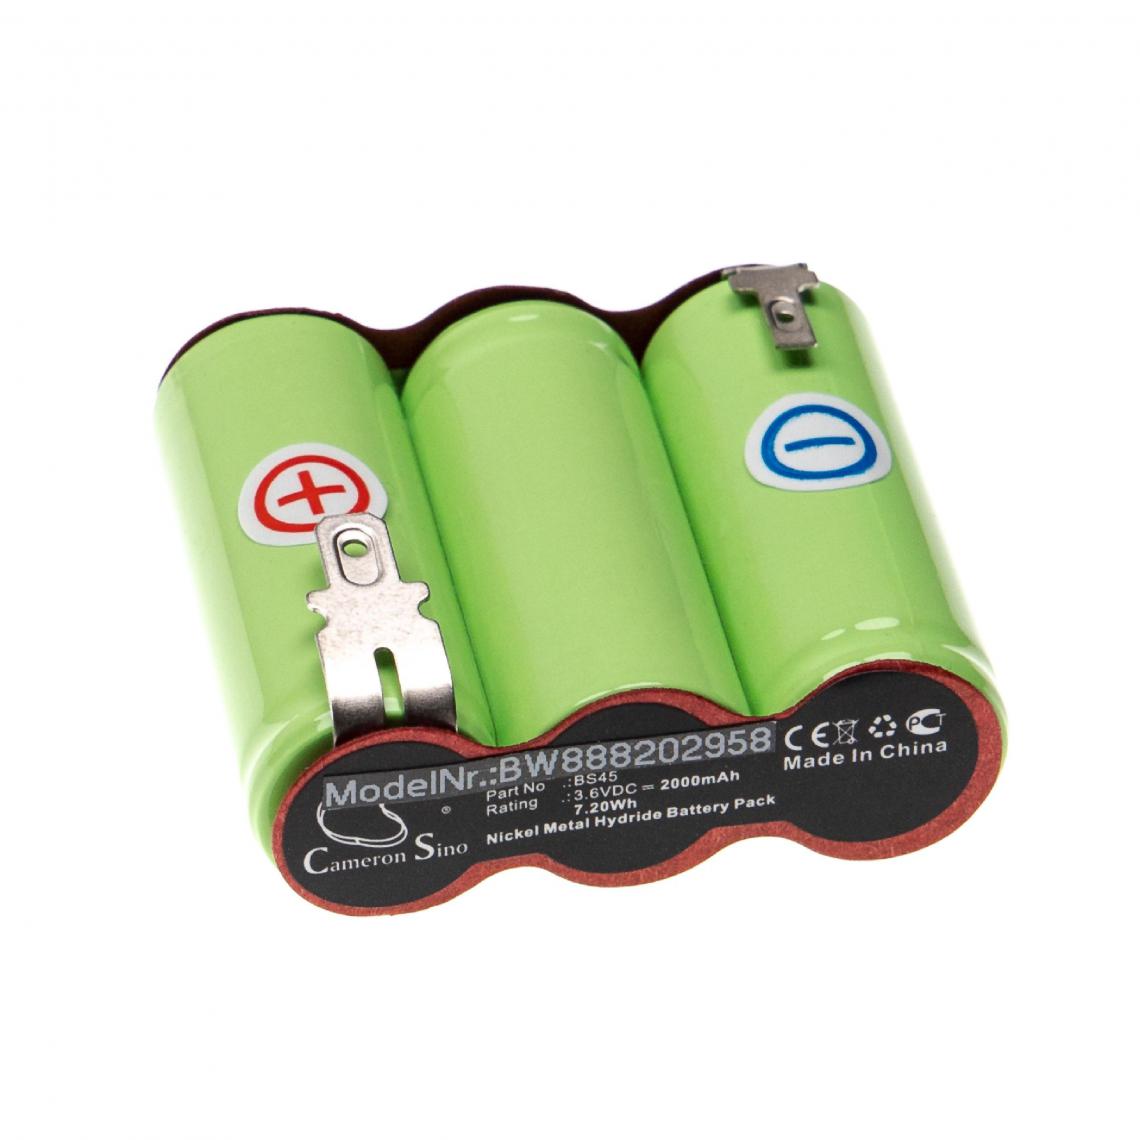 Vhbw - vhbw Batterie compatible avec Wolf Garten Accu 45, Grass Shears Accu 45 Serie B-D outil électrique (2000 mAh, NiMH, 3,6 V) - Accessoires vissage, perçage